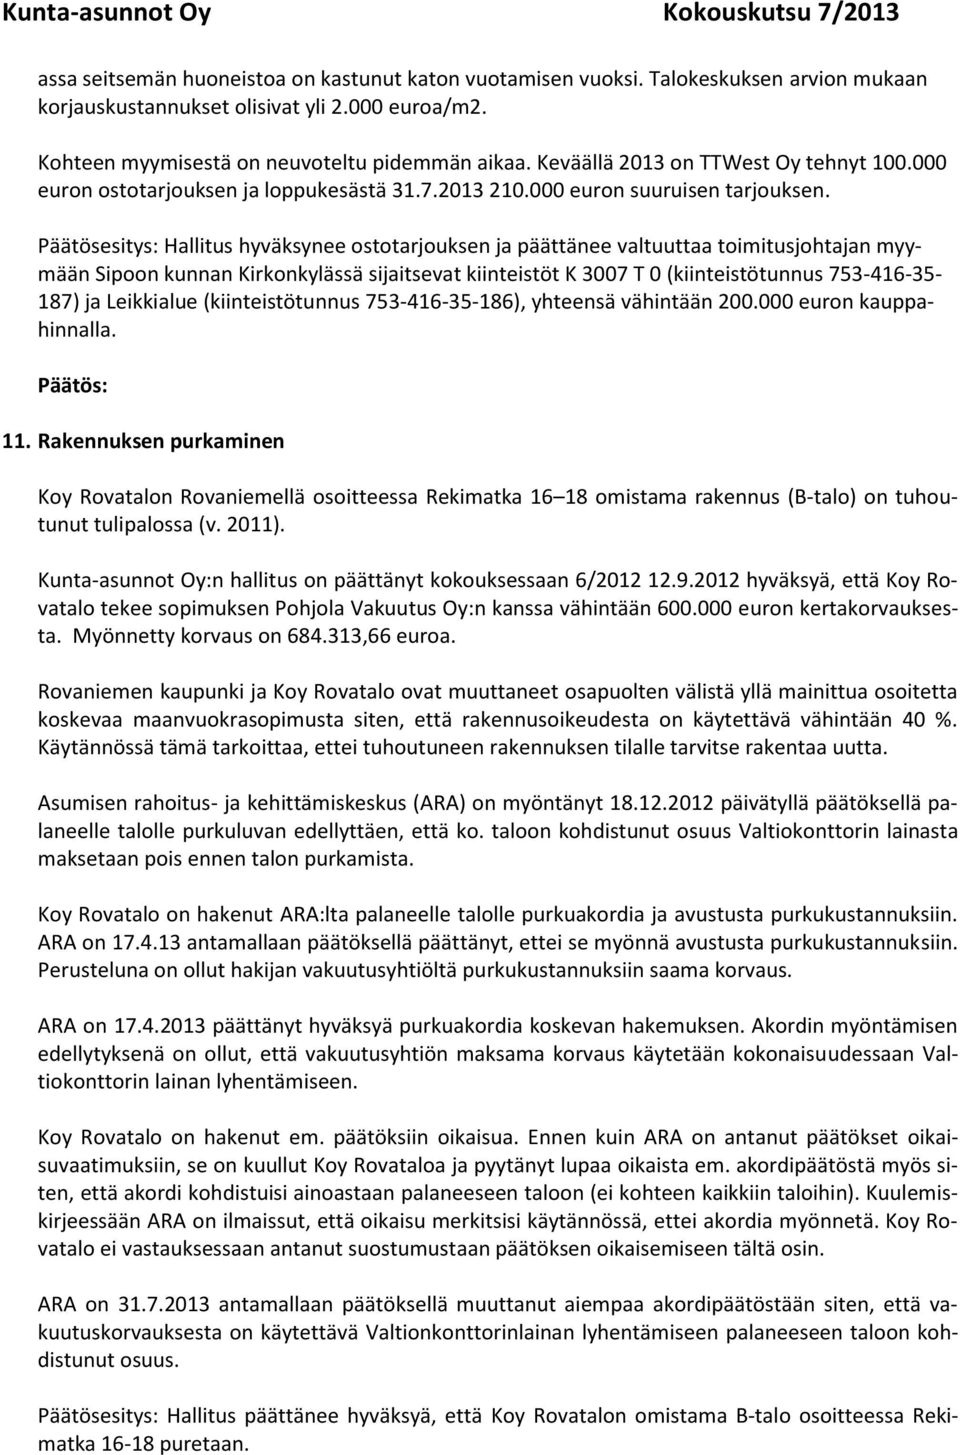 Päätösesitys: Hallitus hyväksynee ostotarjouksen ja päättänee valtuuttaa toimitusjohtajan myymään Sipoon kunnan Kirkonkylässä sijaitsevat kiinteistöt K 3007 T 0 (kiinteistötunnus 753-416-35-187) ja